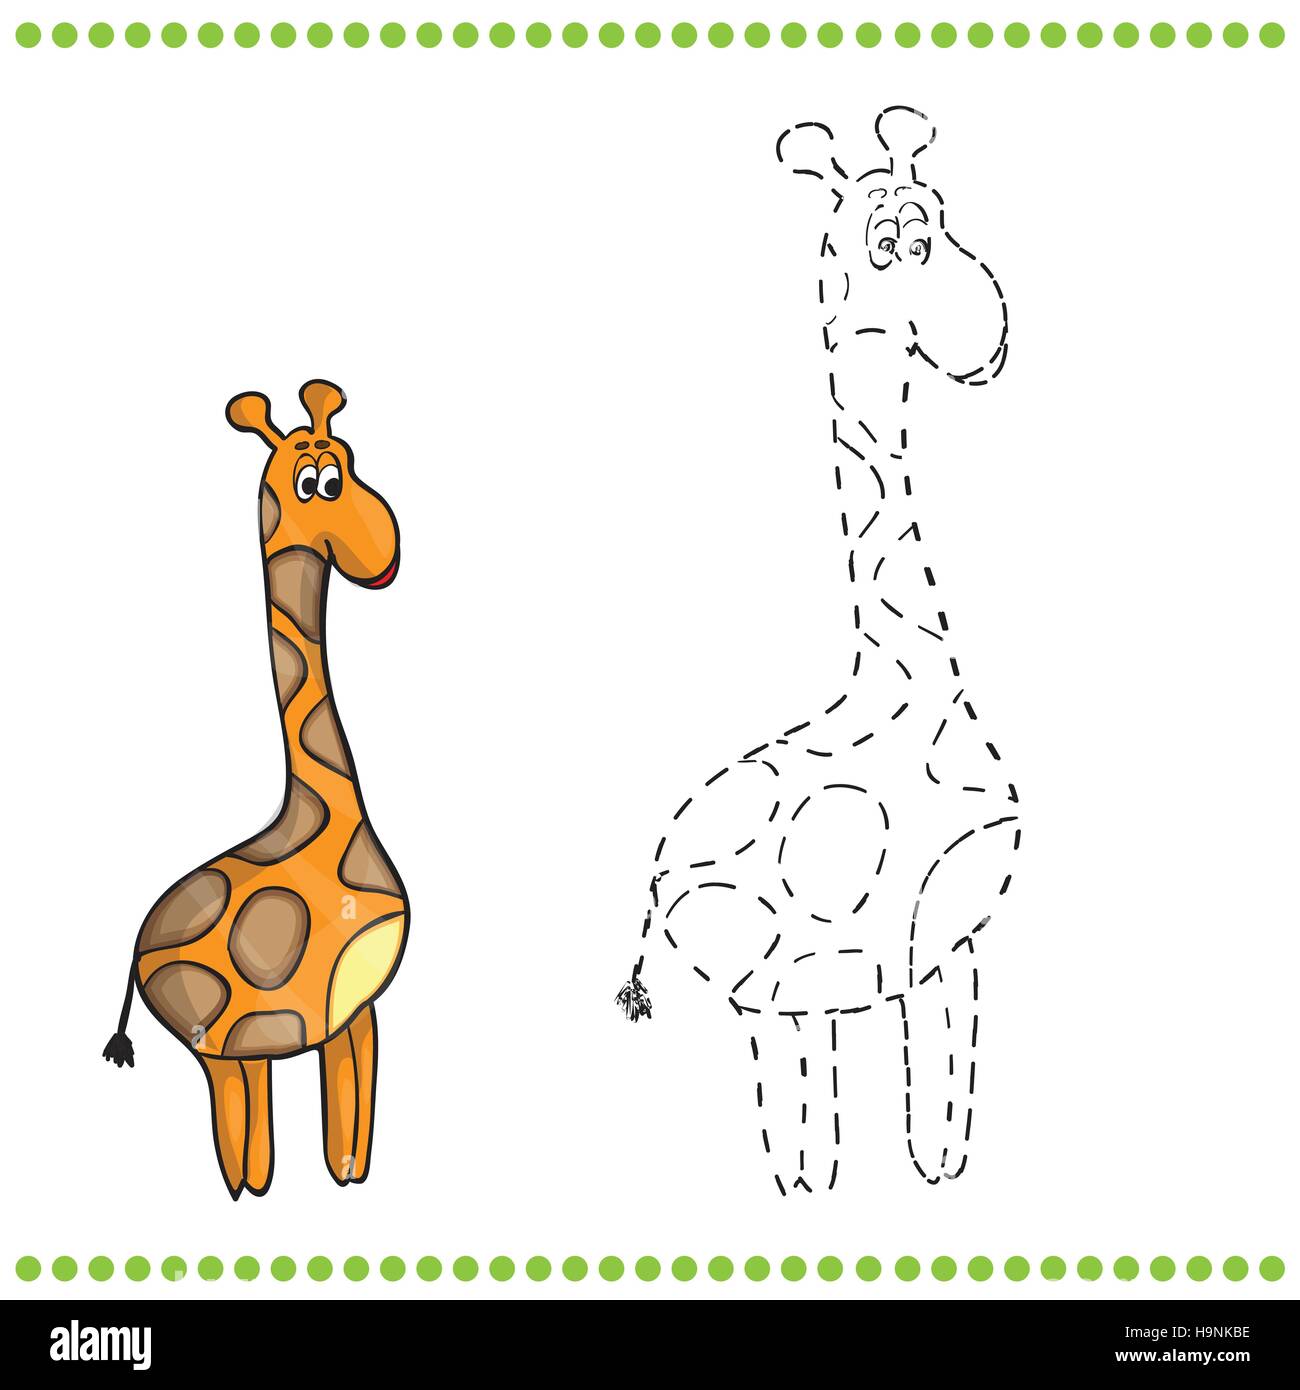 malvorlagen giraffen